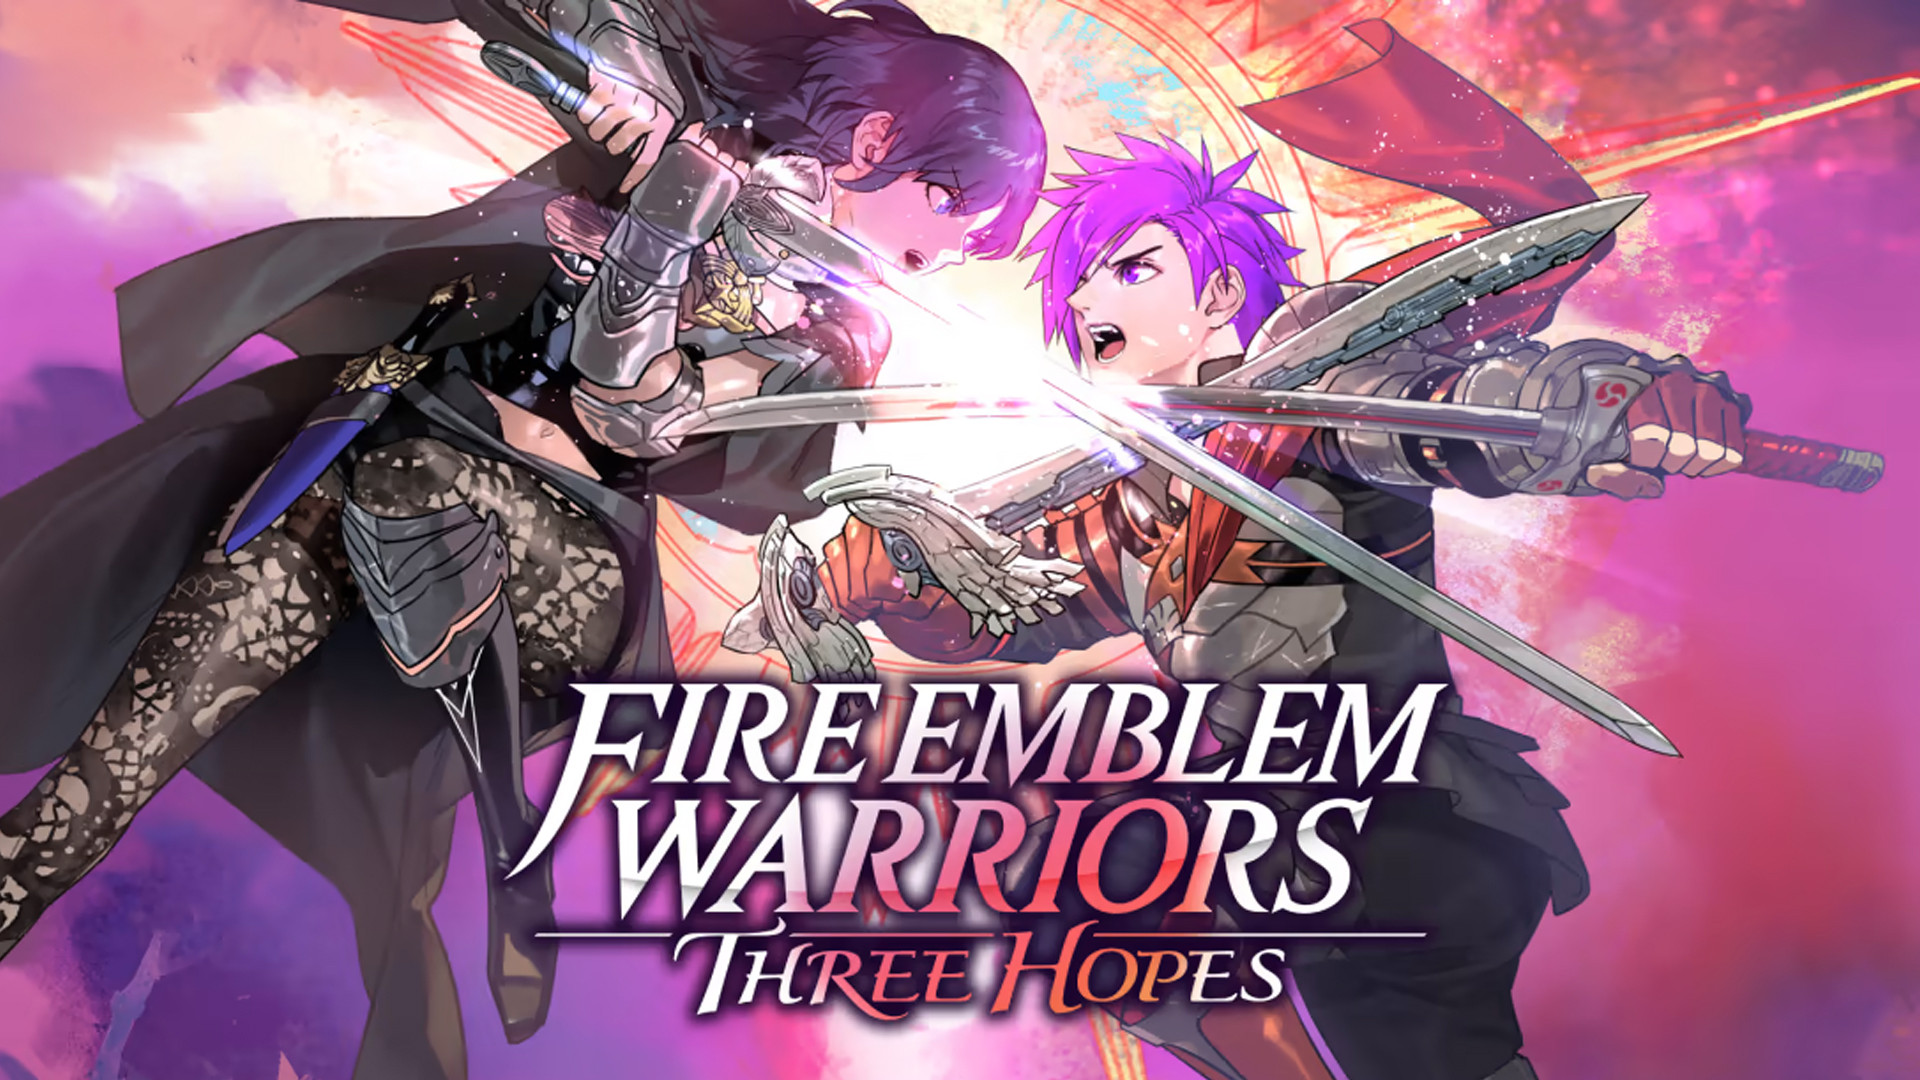 Quand sort Fire Emblem Warriors Three Hopes ?